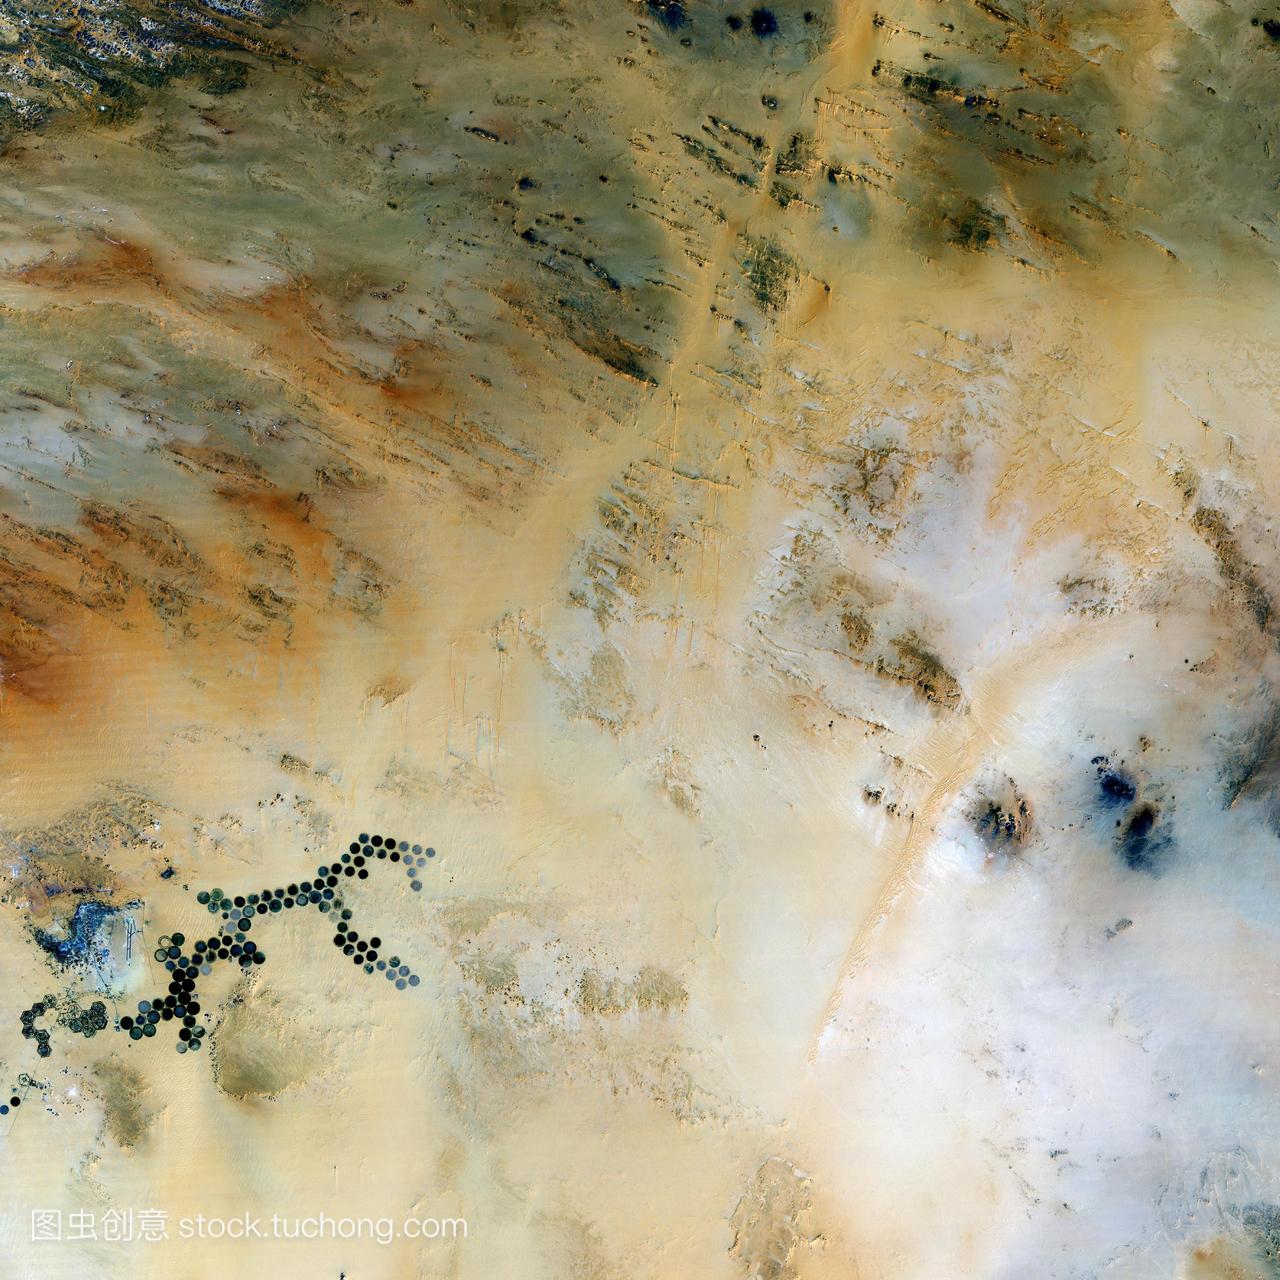 kufra绿洲,利比亚,卫星图像。在撒哈拉沙漠中,这